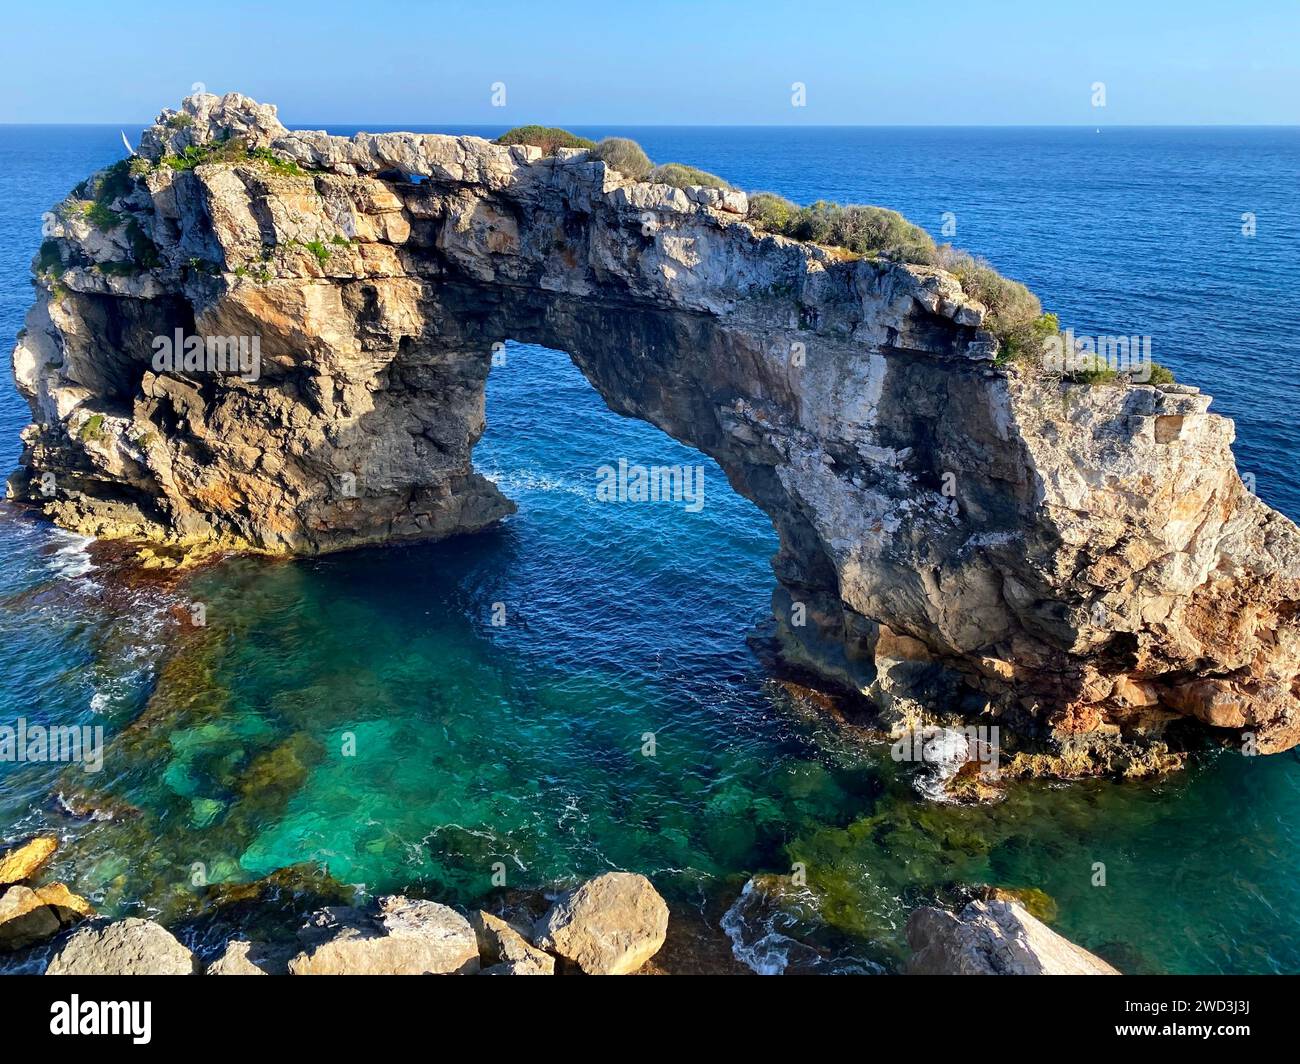 Belle vue sur l'arche rocheuse naturelle (13 mètres de haut) au point de vue, Mirador es Pontas sur l'île de Majorque, Santanyí, îles Baléares, Espagne Banque D'Images